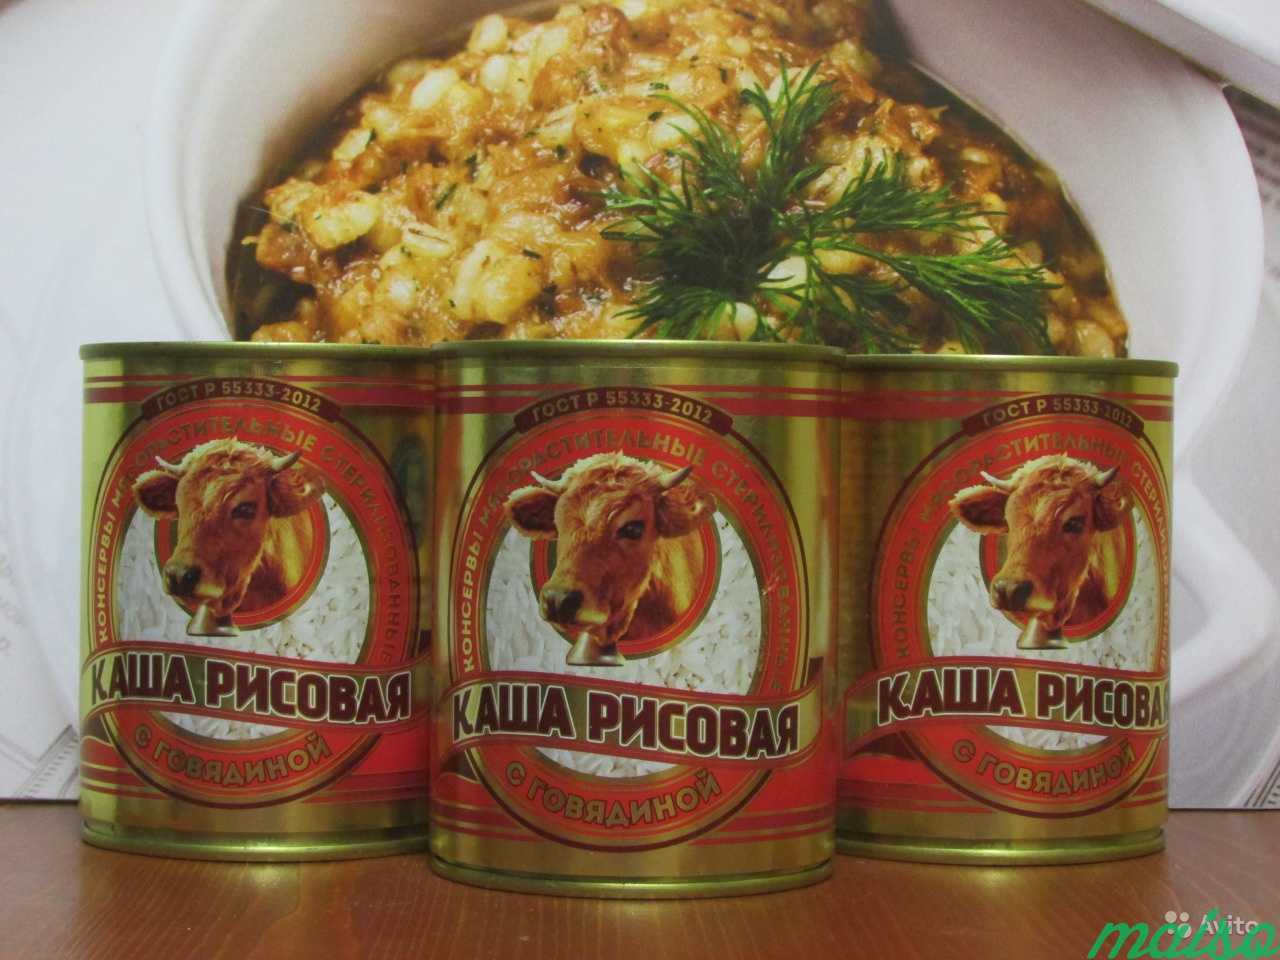 Каша рисовая с говядиной в Москве. Фото 1